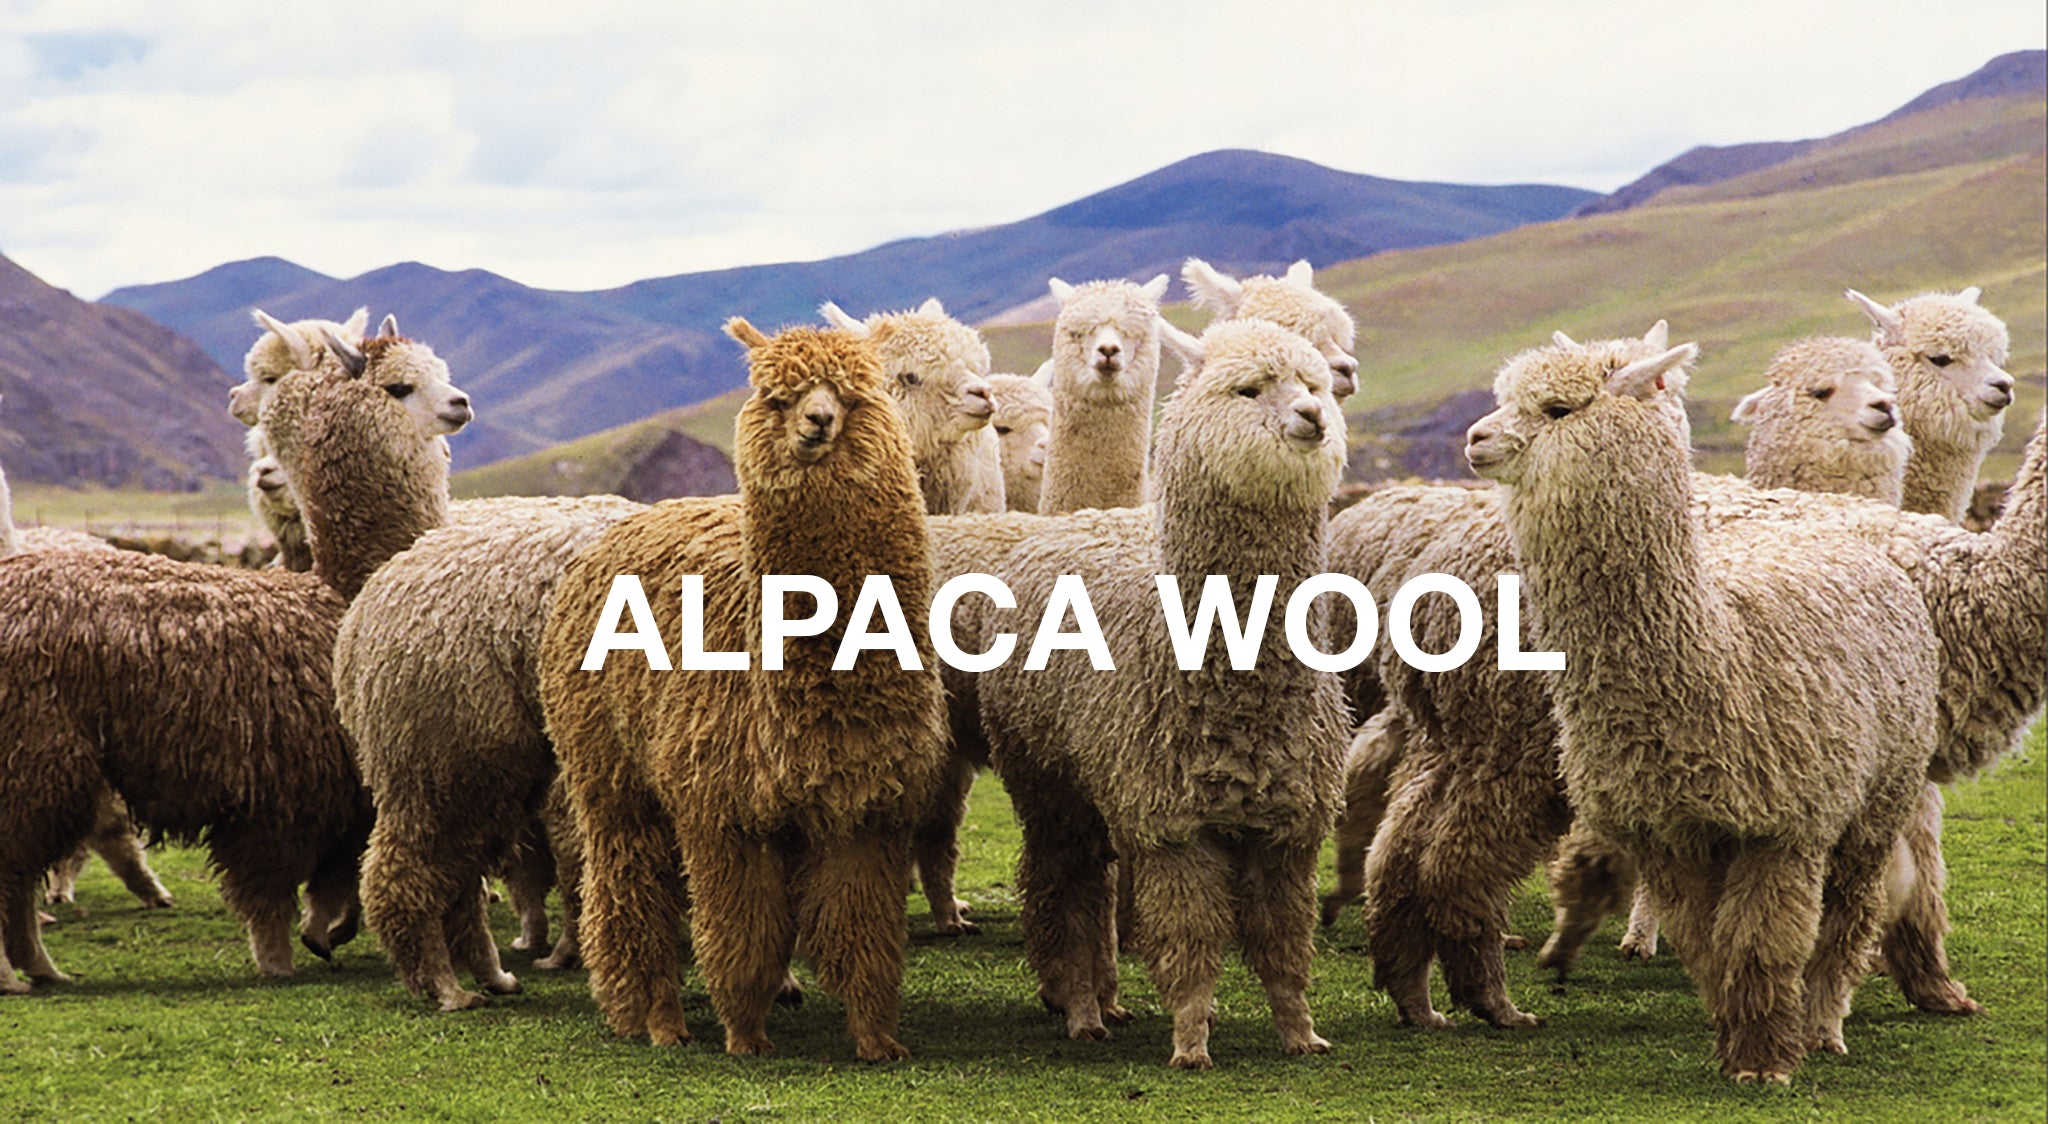 Alpaca Wool